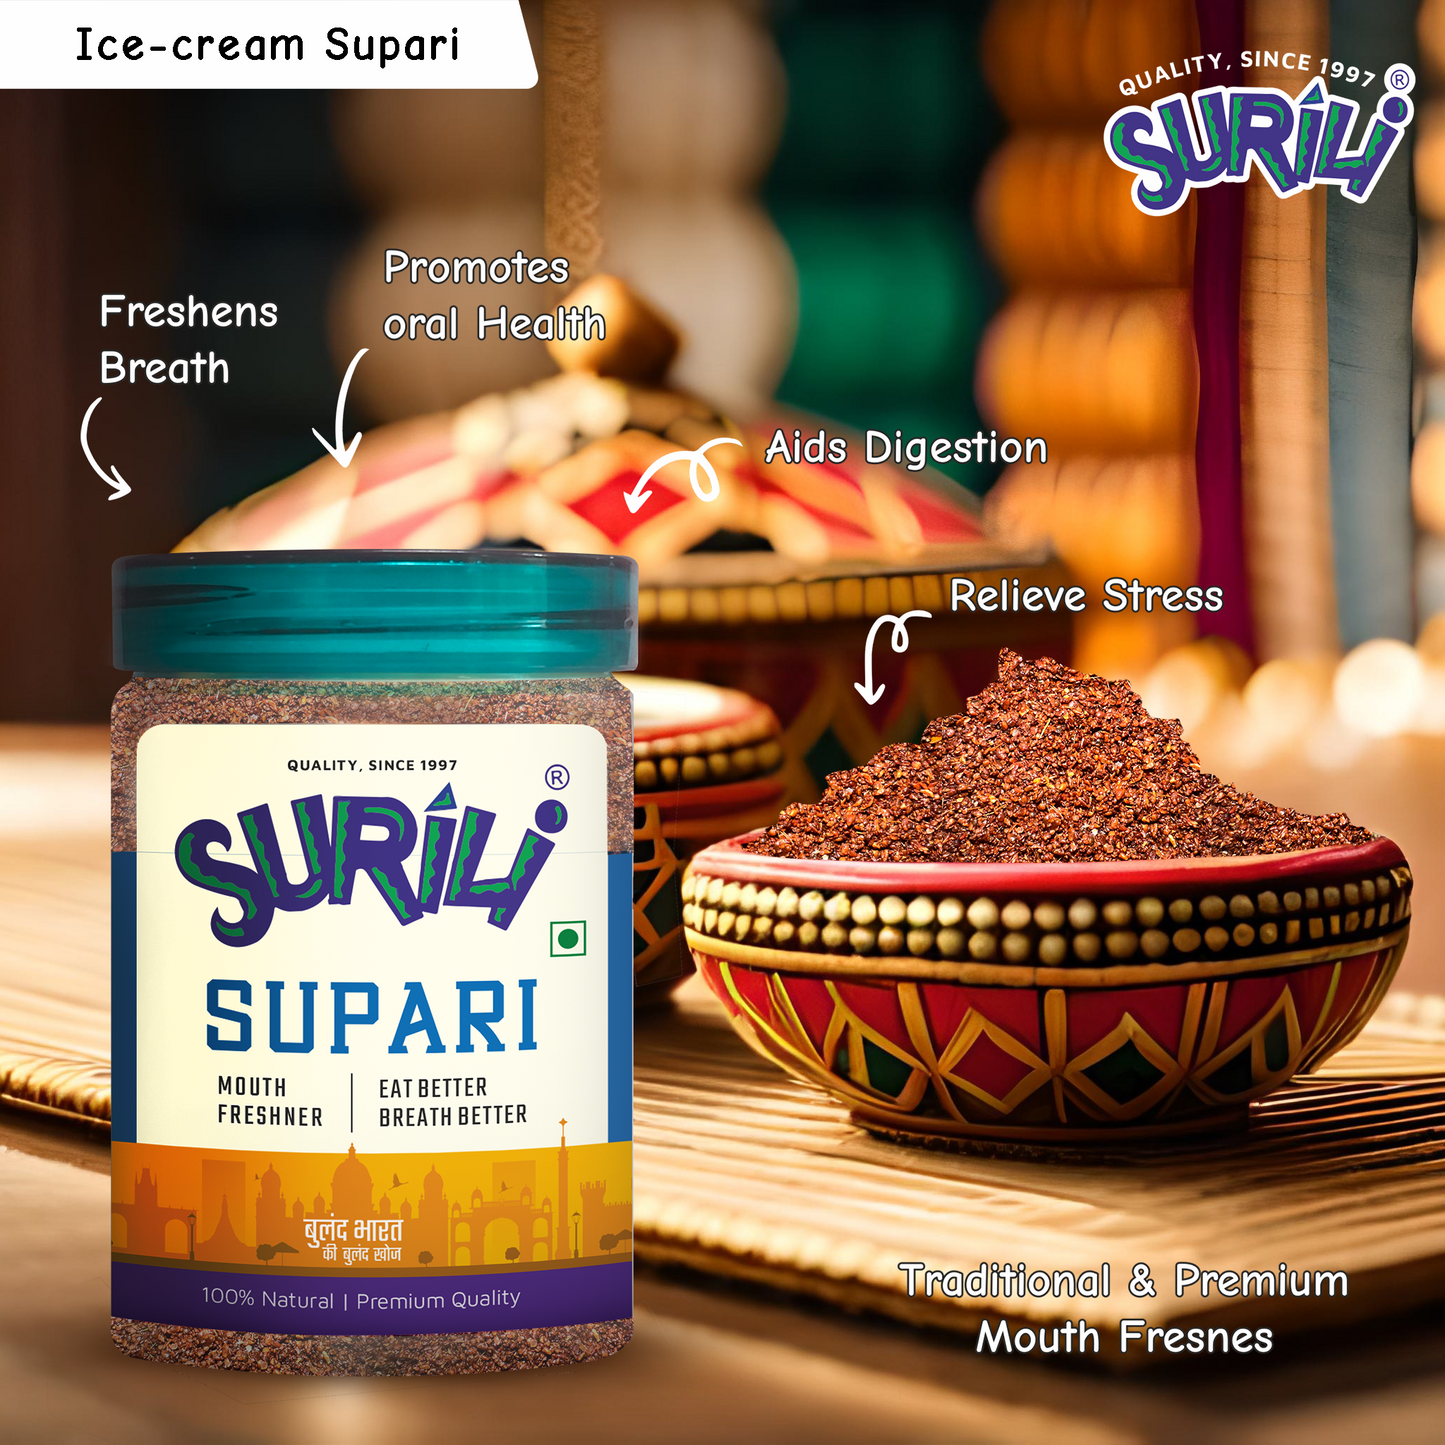 Ice-cream Supari